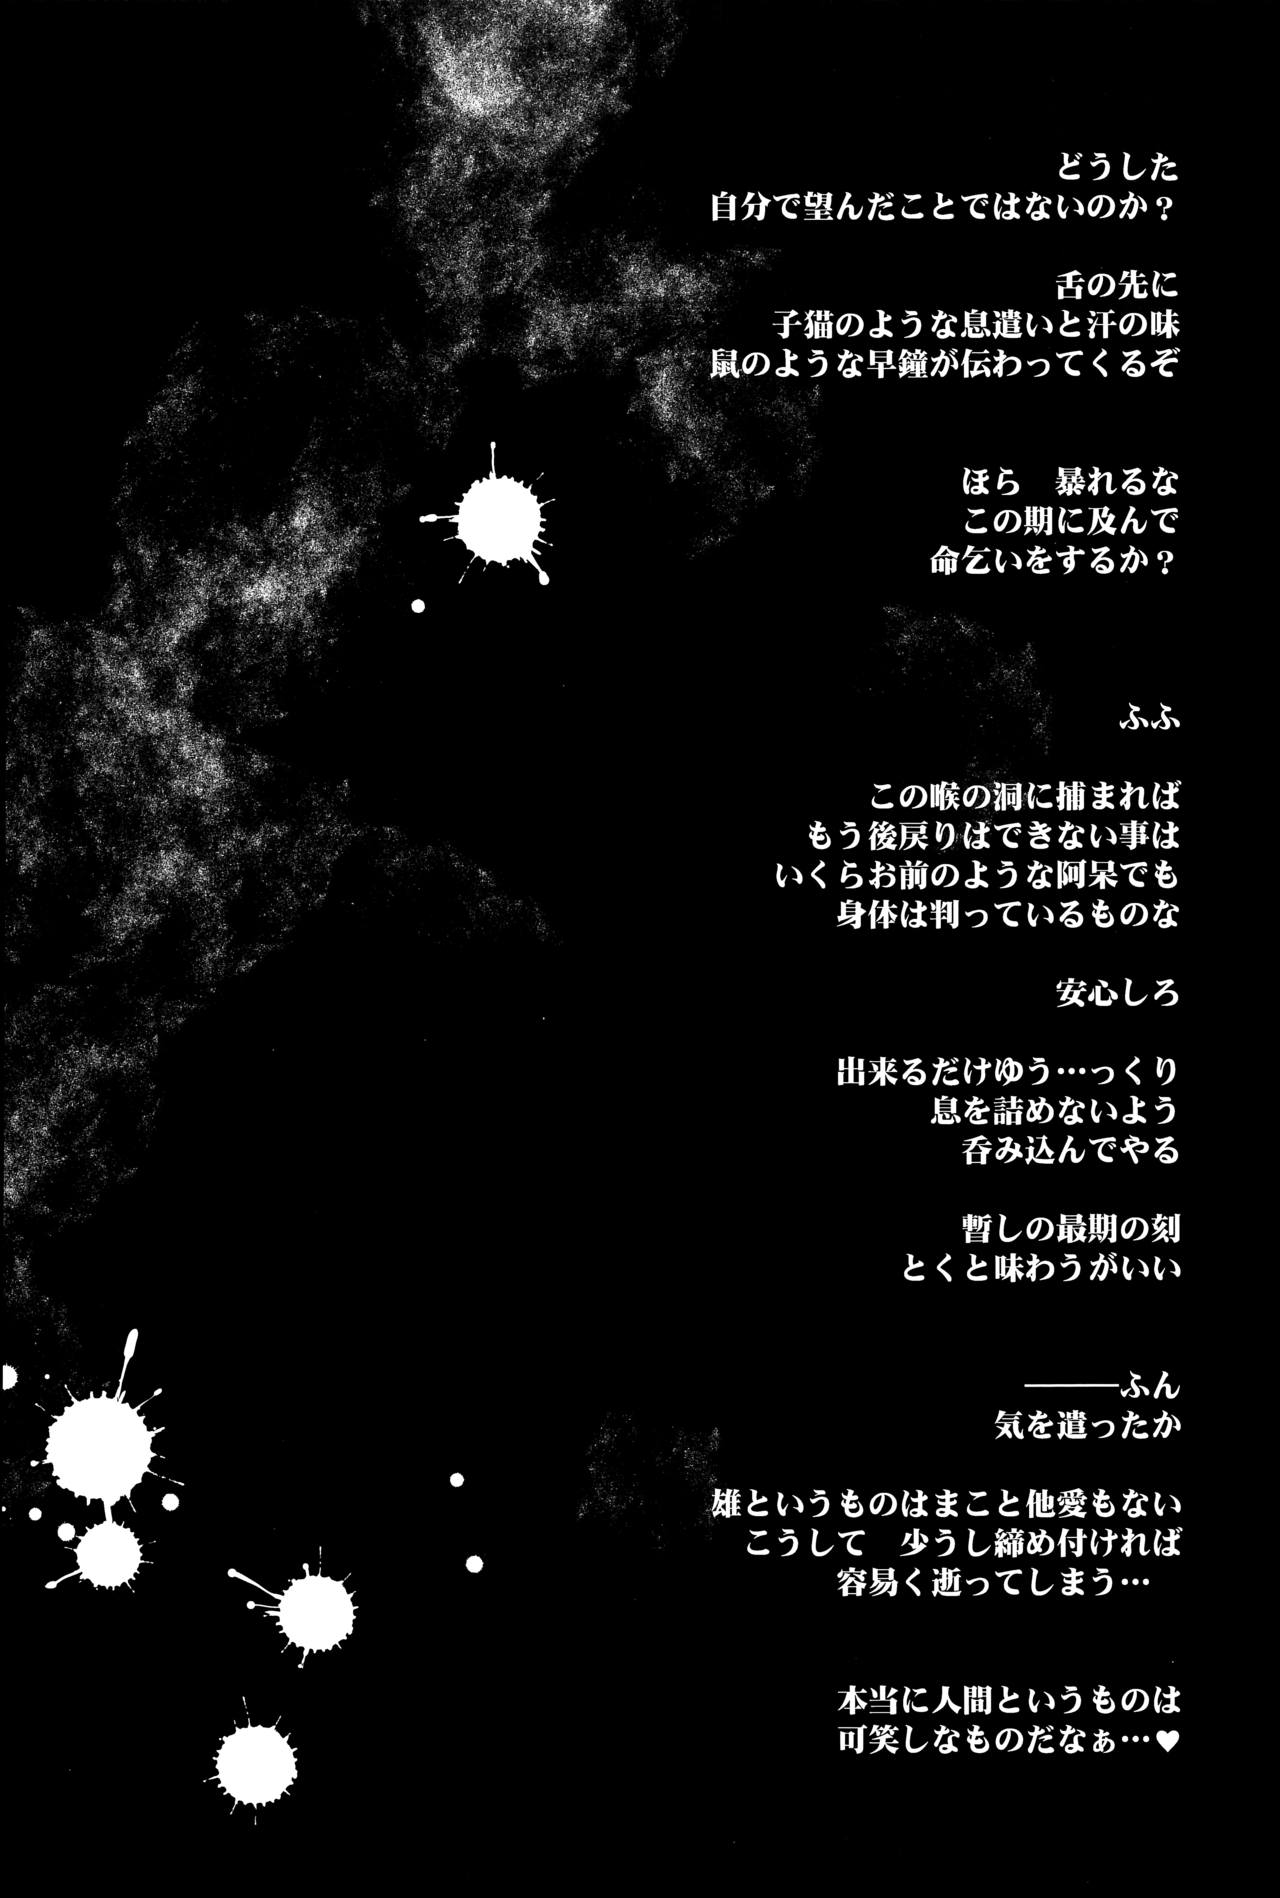 (C91) [YAMADA AIR BASE (ざわ)] オシオキスキュラン (東方Project)